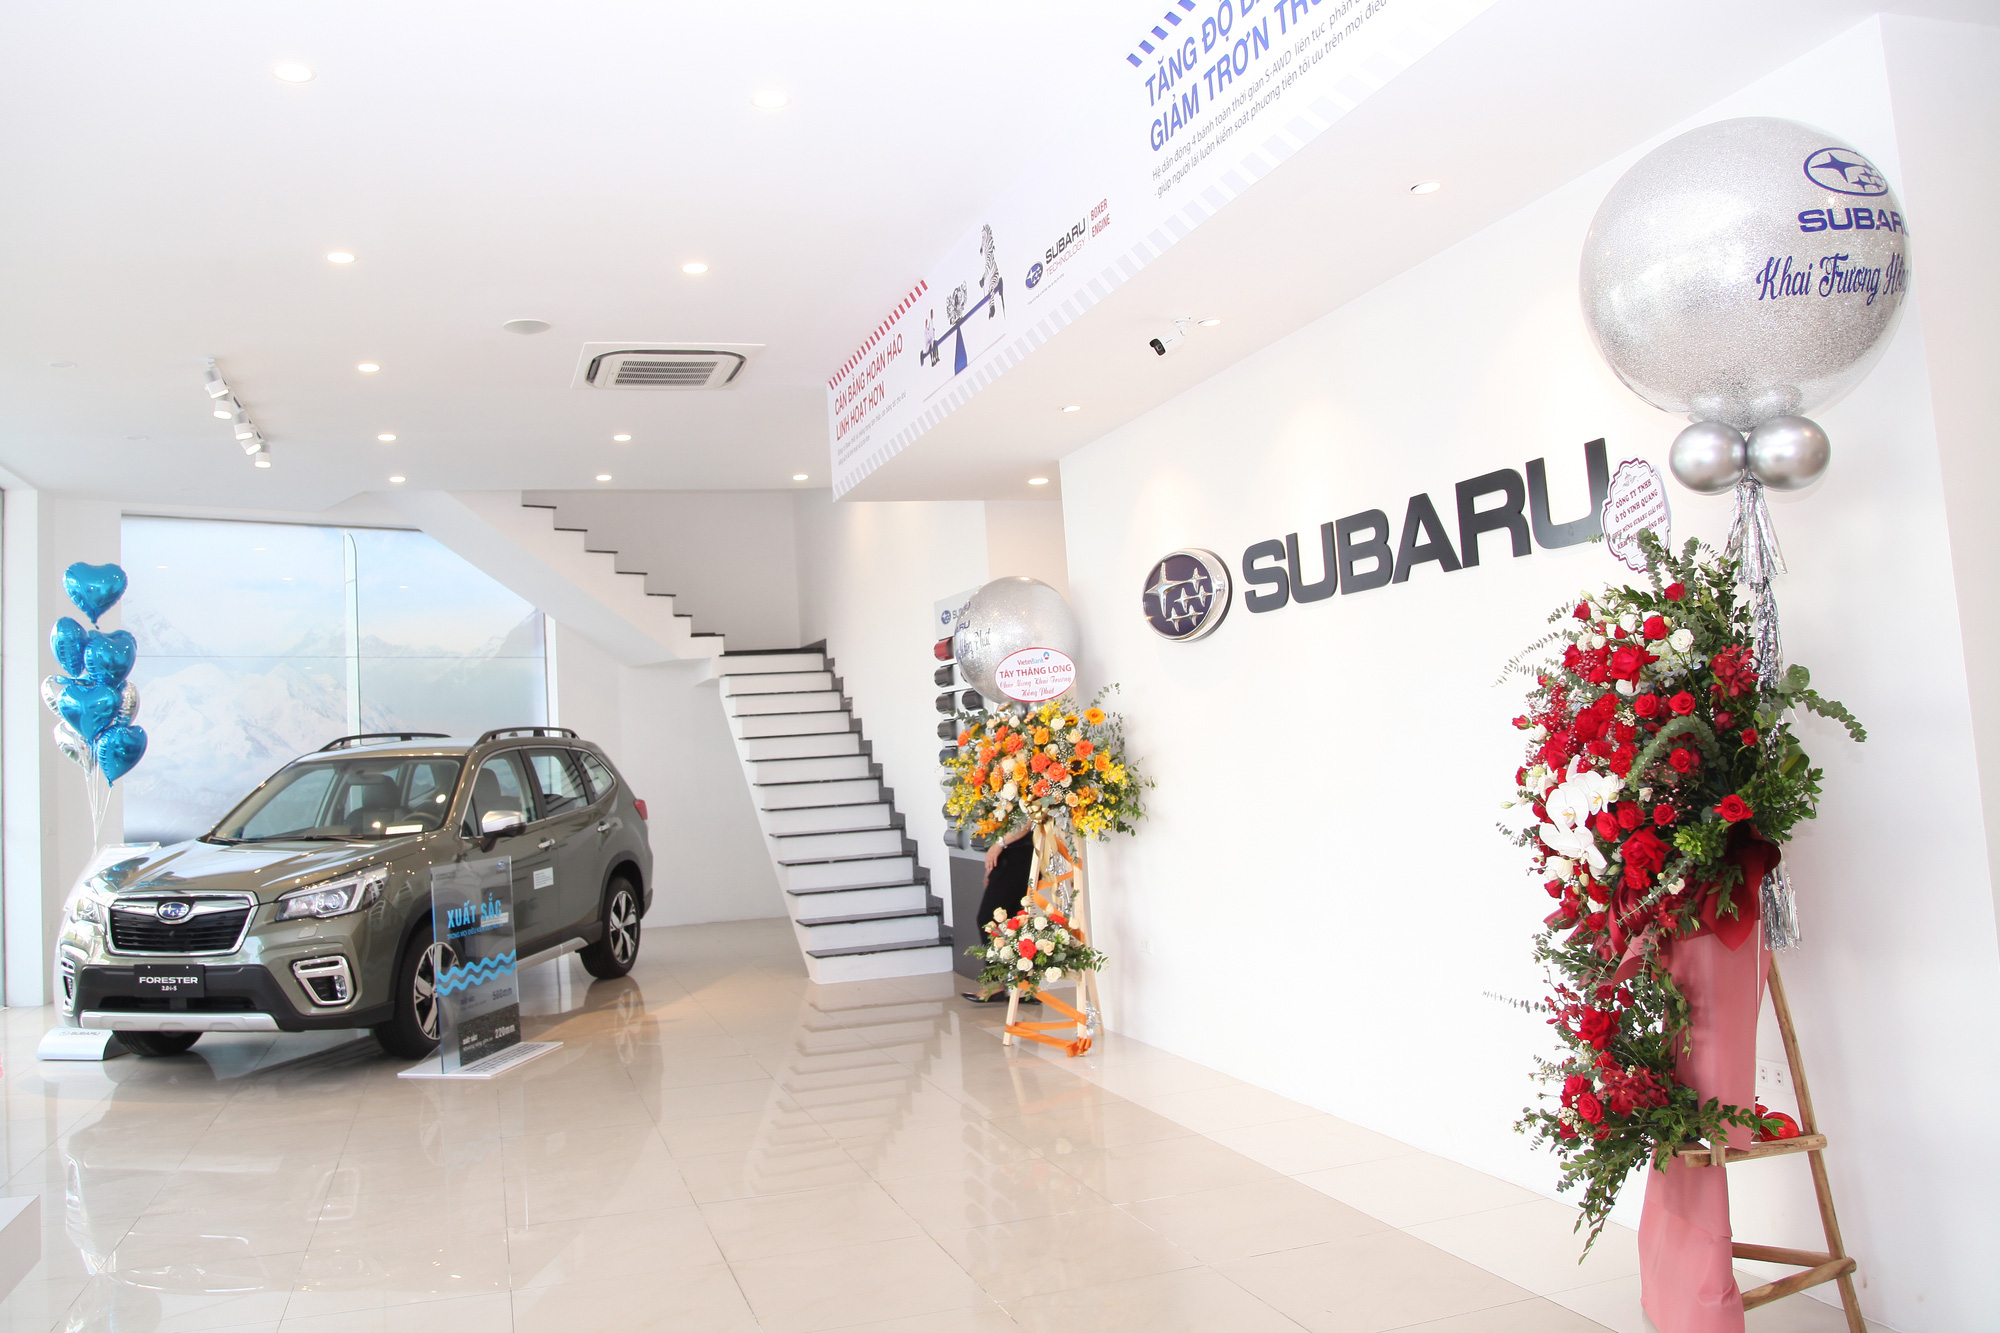 Giảm giá xe hơn 250 triệu chưa đủ, Subaru quyết mở rộng thị phần bằng đại lý mới ở Hà Nội - Ảnh 1.